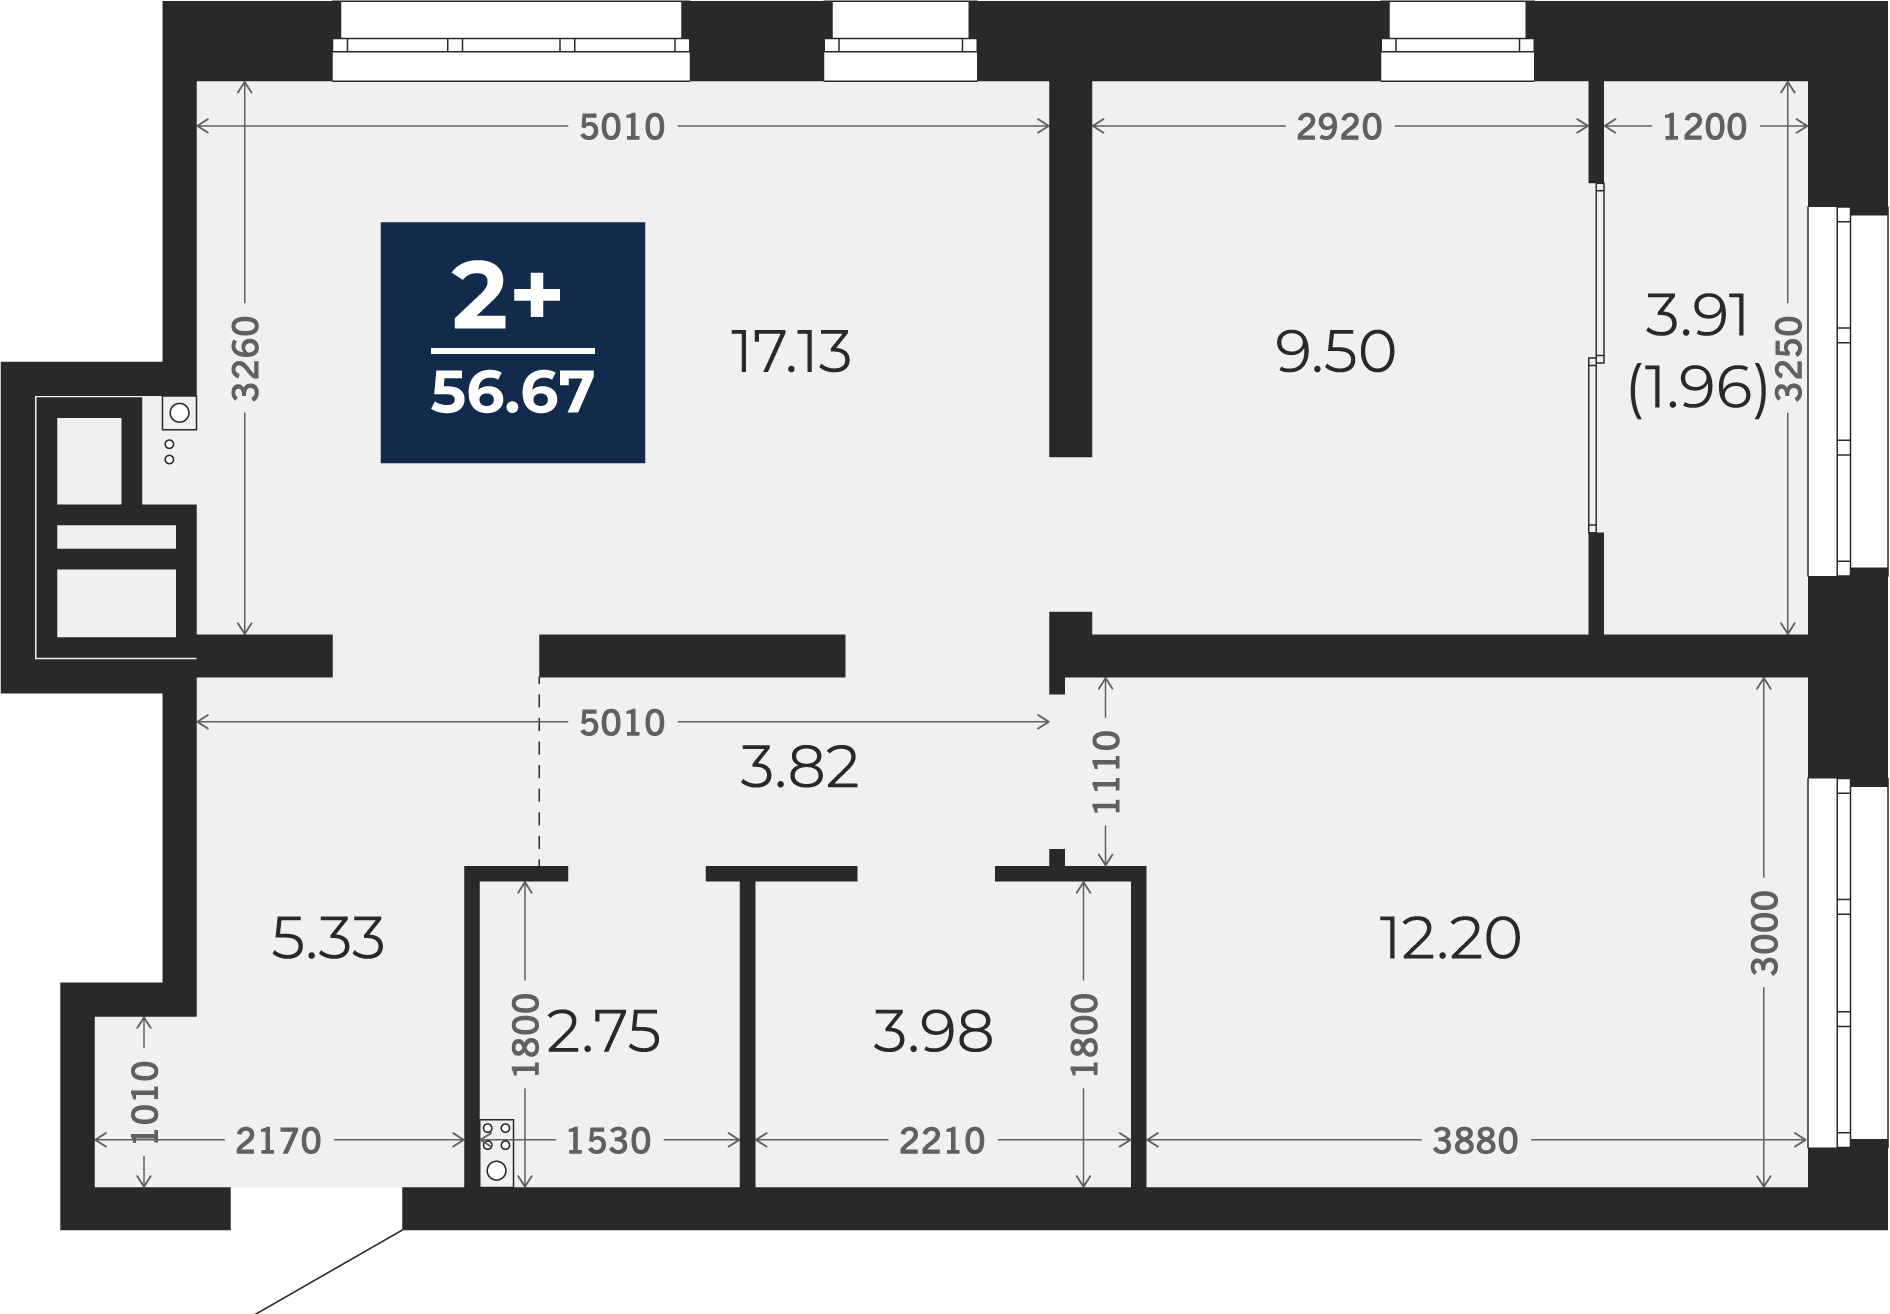 Квартира № 70, 2-комнатная, 56.67 кв. м, 2 этаж